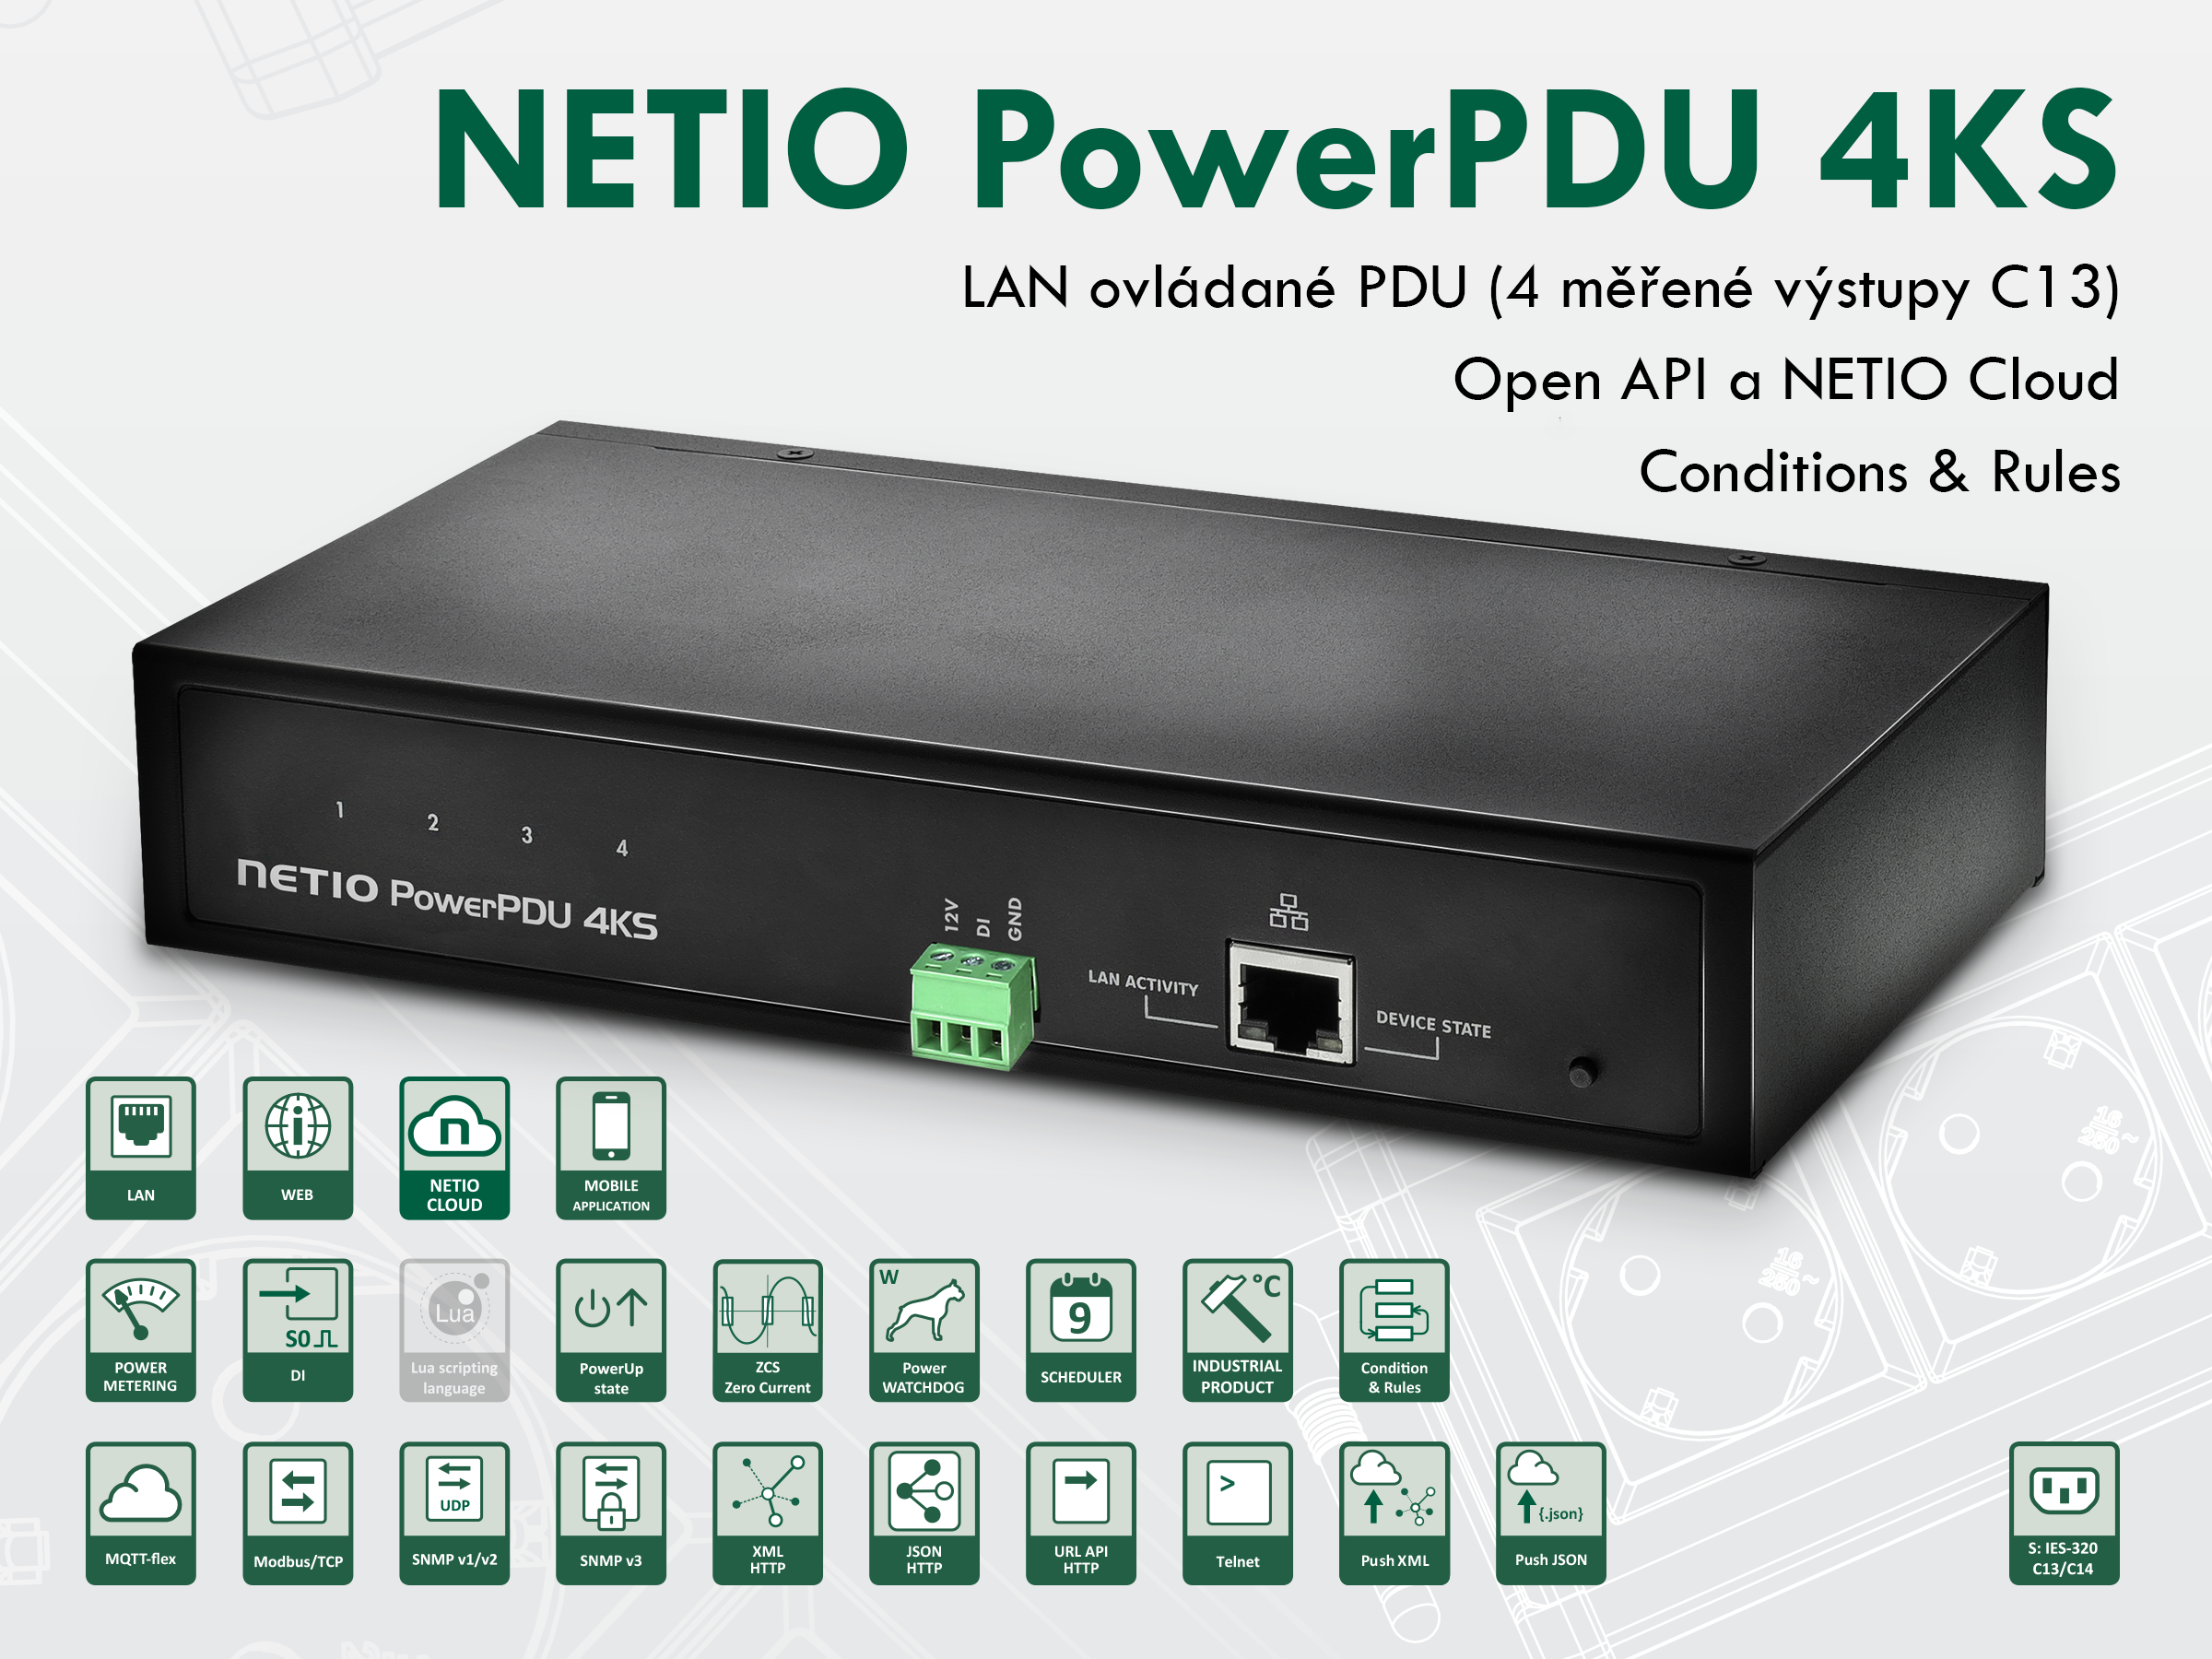 NETIO PowerPDU 4KS EU 4xIEC320 C13, měření el.hodnot, 1xLAN, seriál, SCZ, IOC, API, IP Watchdog, LUA